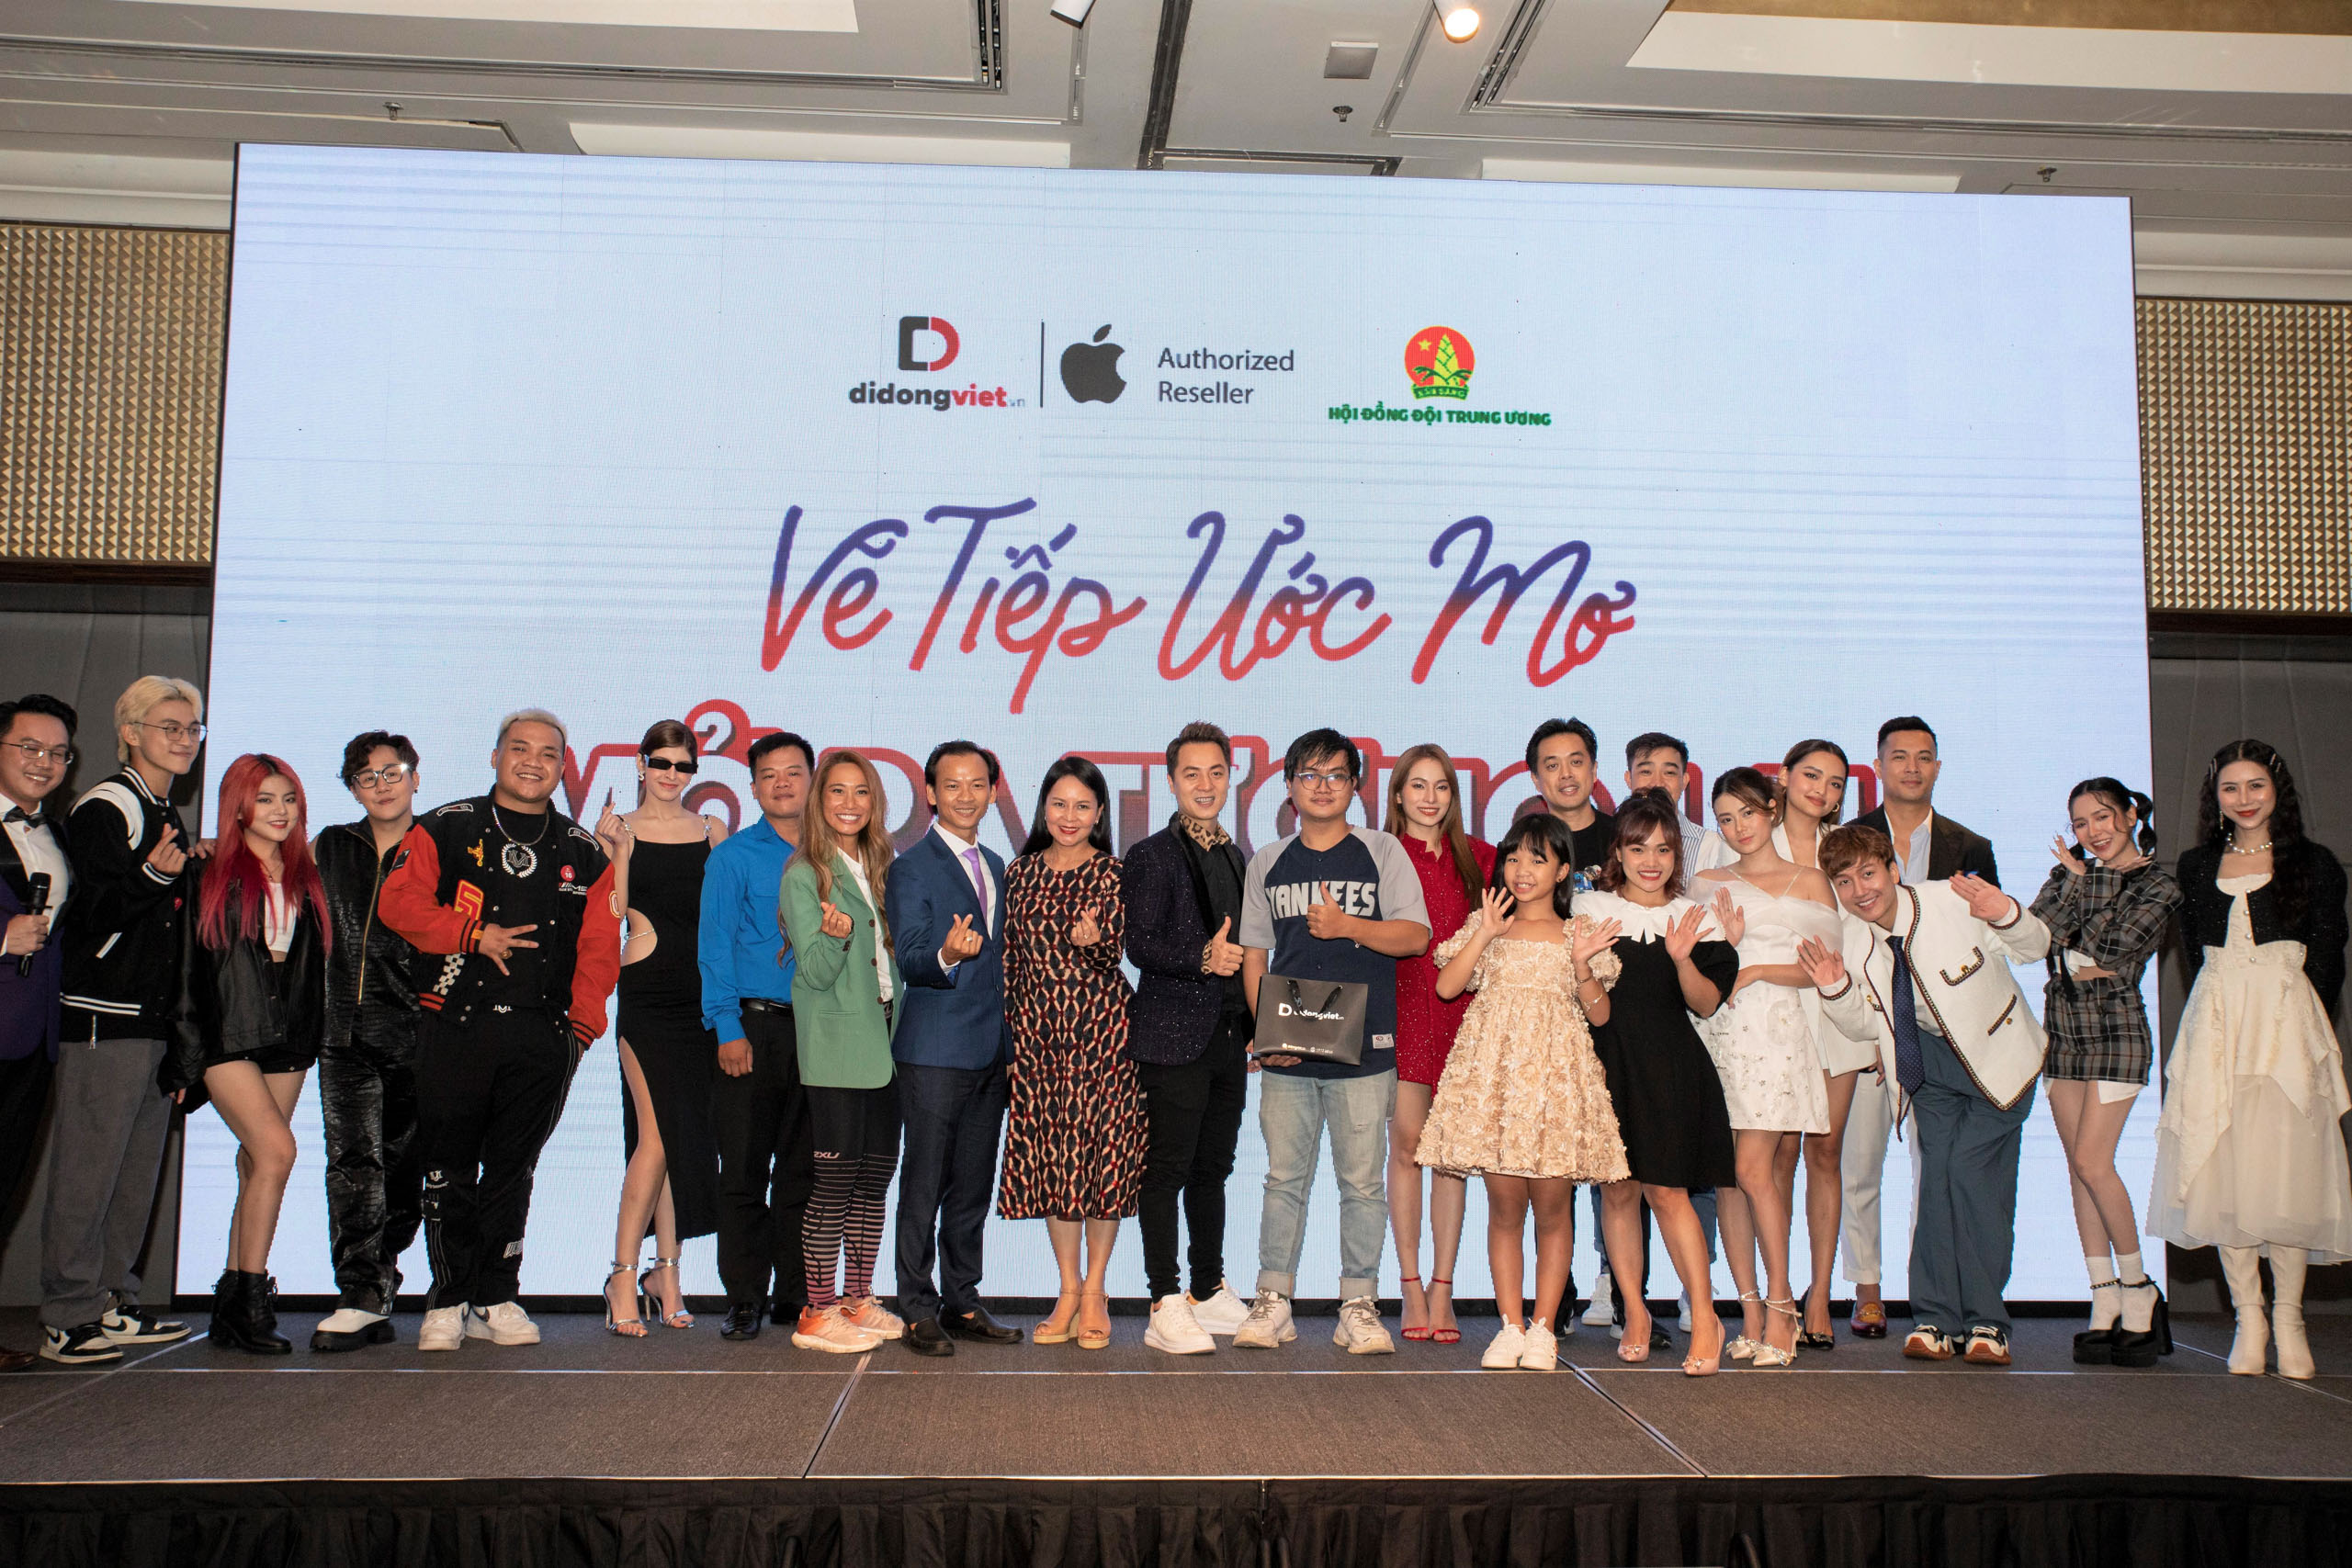 Di Động Việt tổ chức sự kiện “Vẽ tiếp ước mơ, mở ra tương lai”, mở bán iPhone 14, giúp đỡ bệnh nhi nghèo